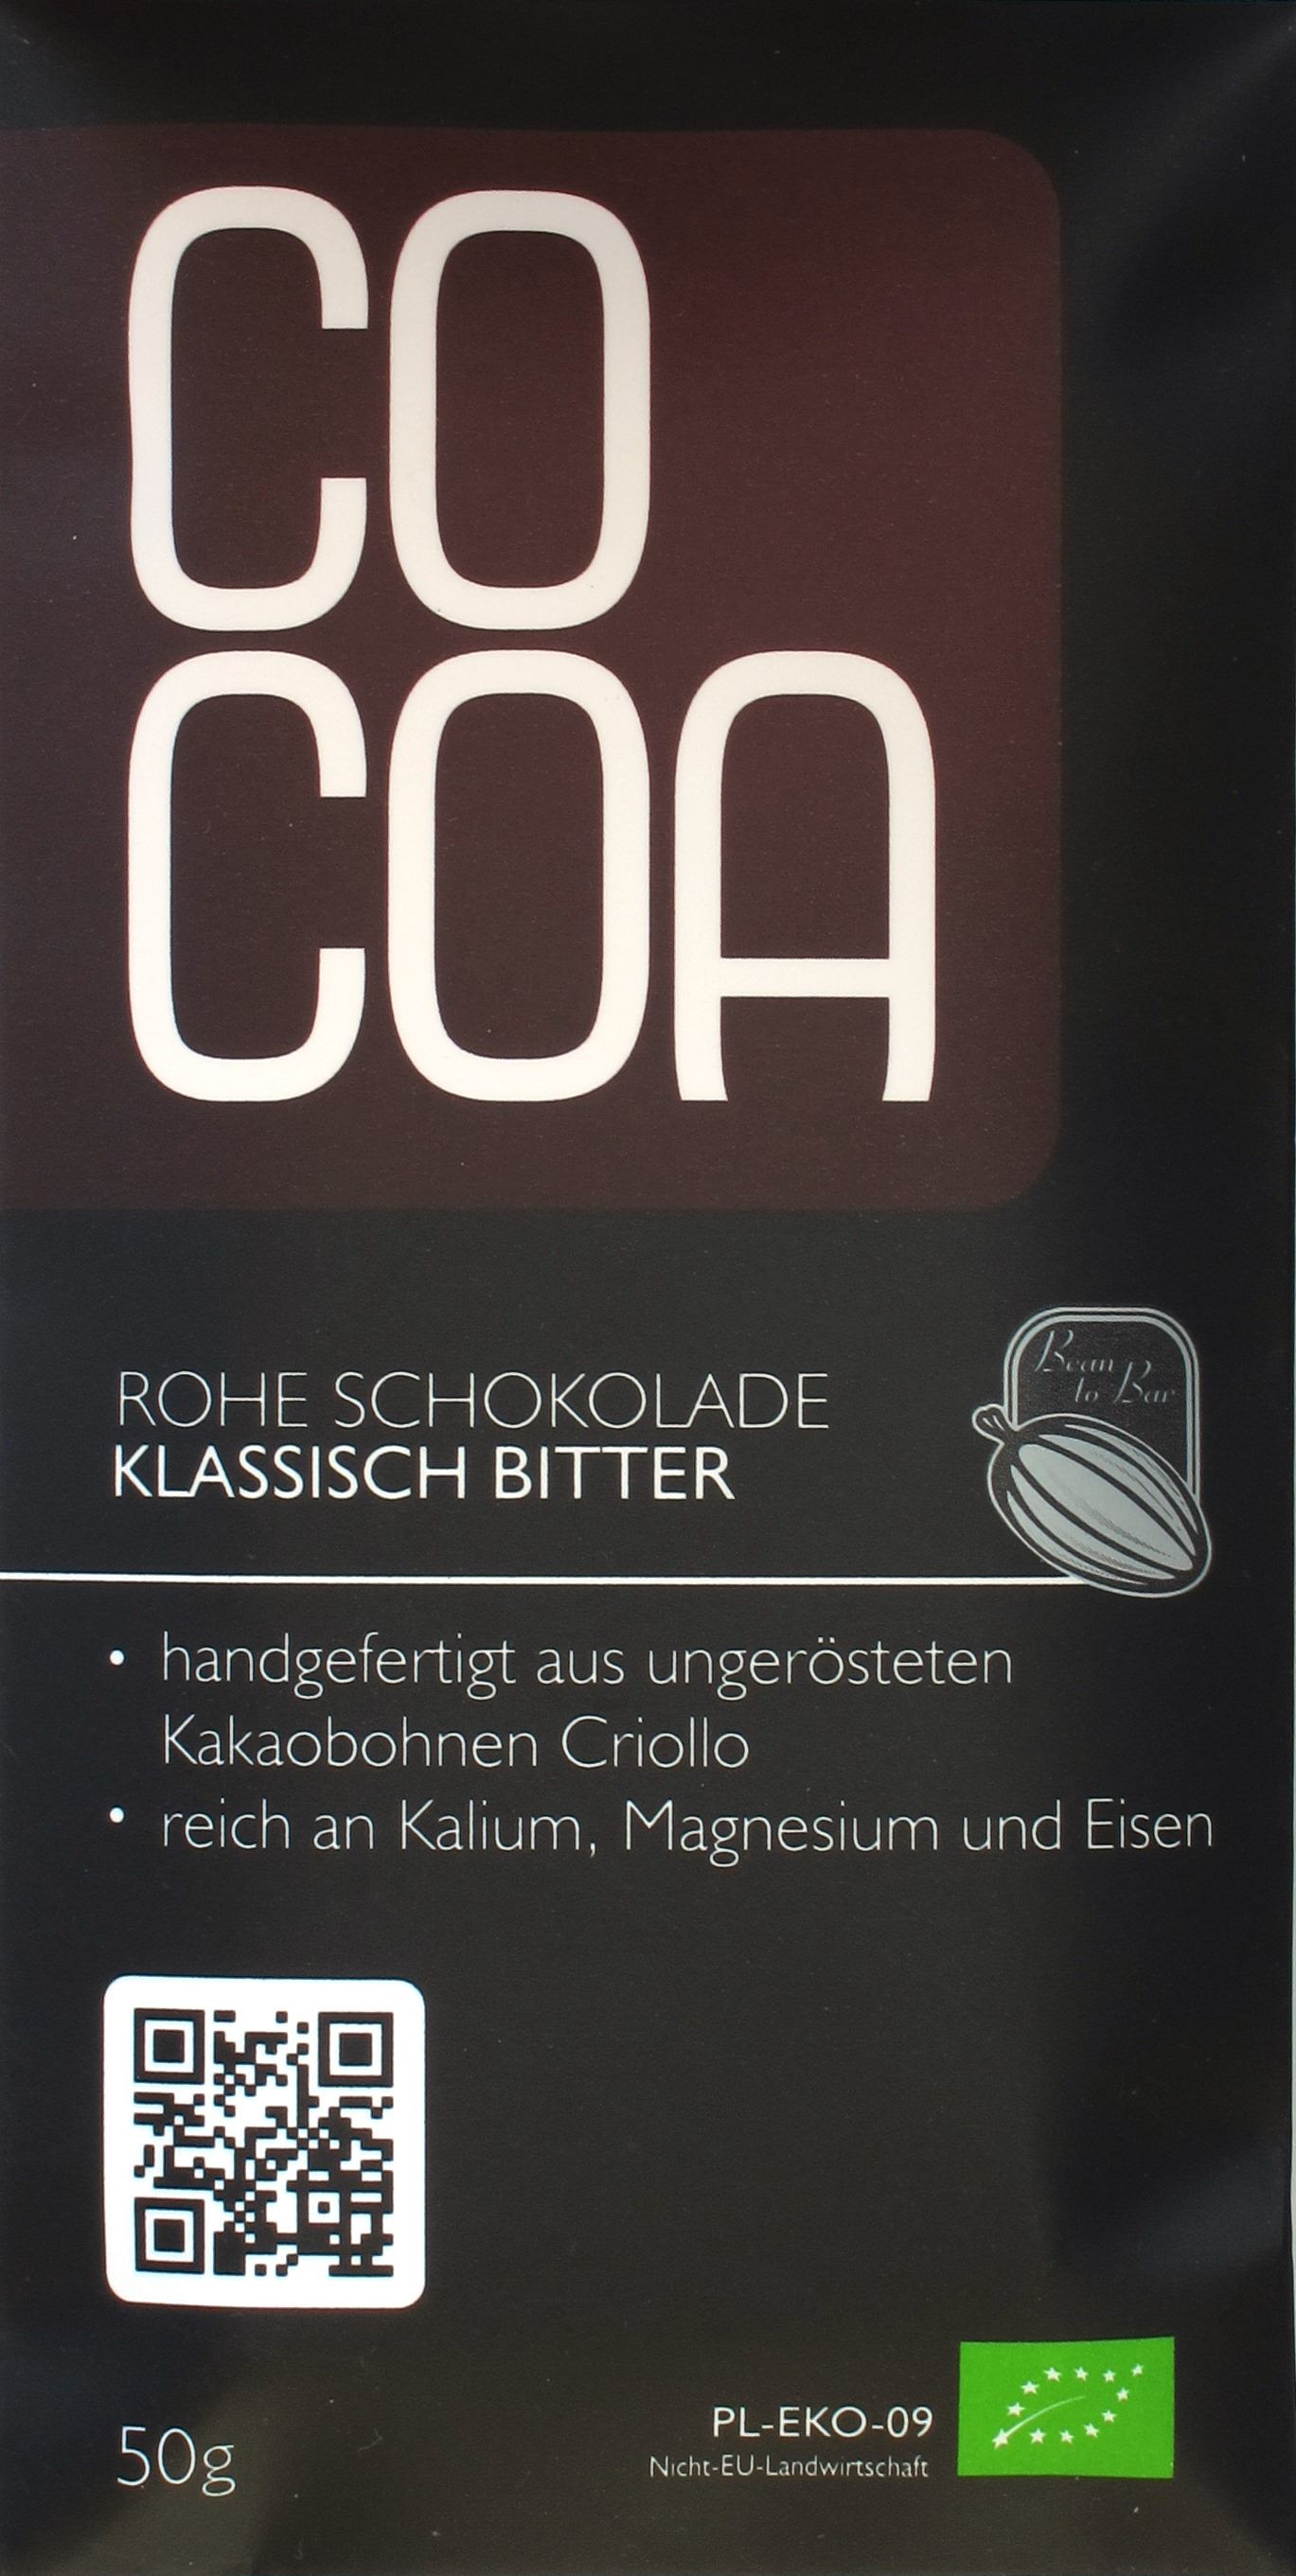 Cocoa-Schokoladentafel "klassisch bitter"